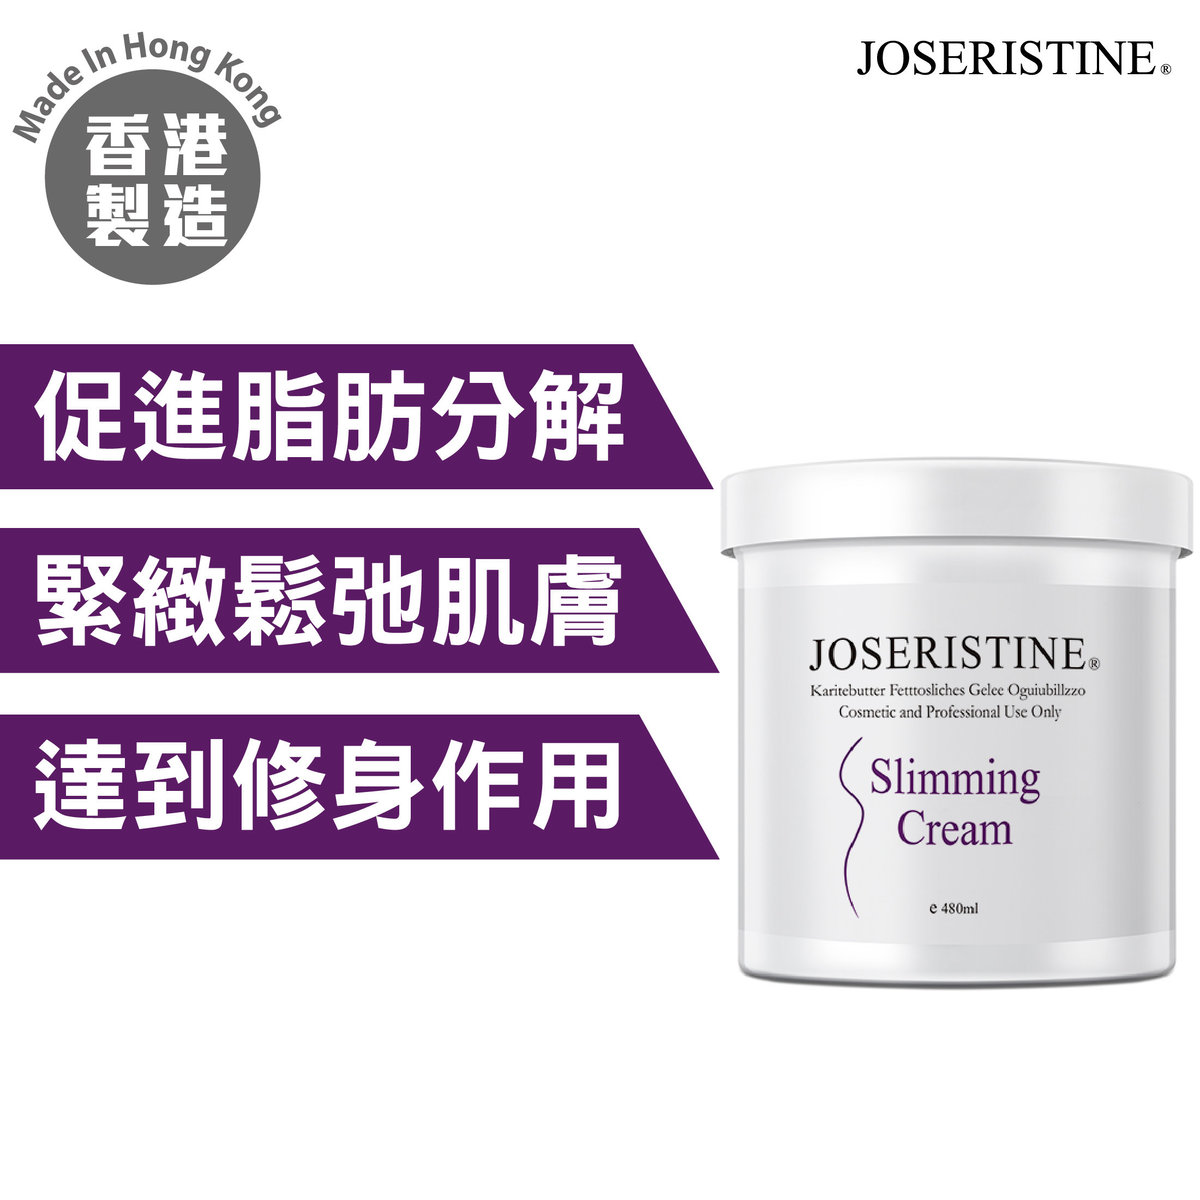 Slimming Cream (480 ml)